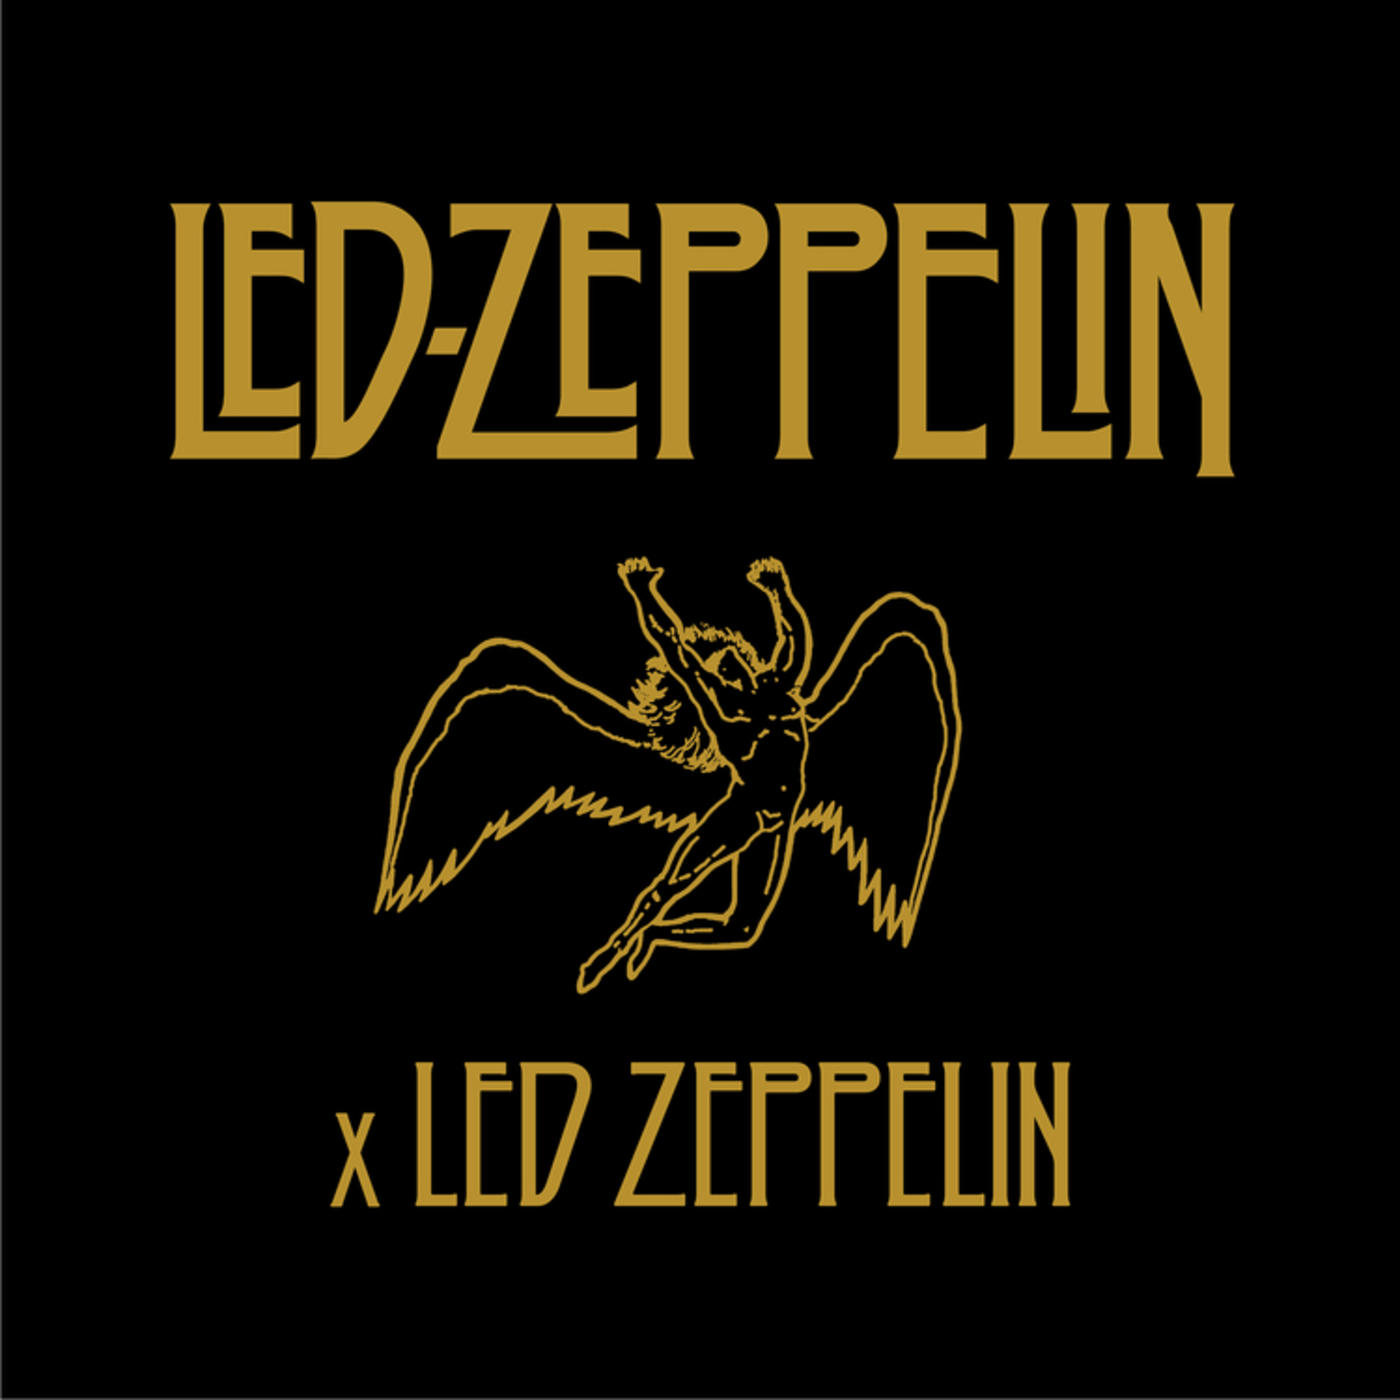 LED ZEPPELIN - Led Zeppelin x Led Zeppelin cover 